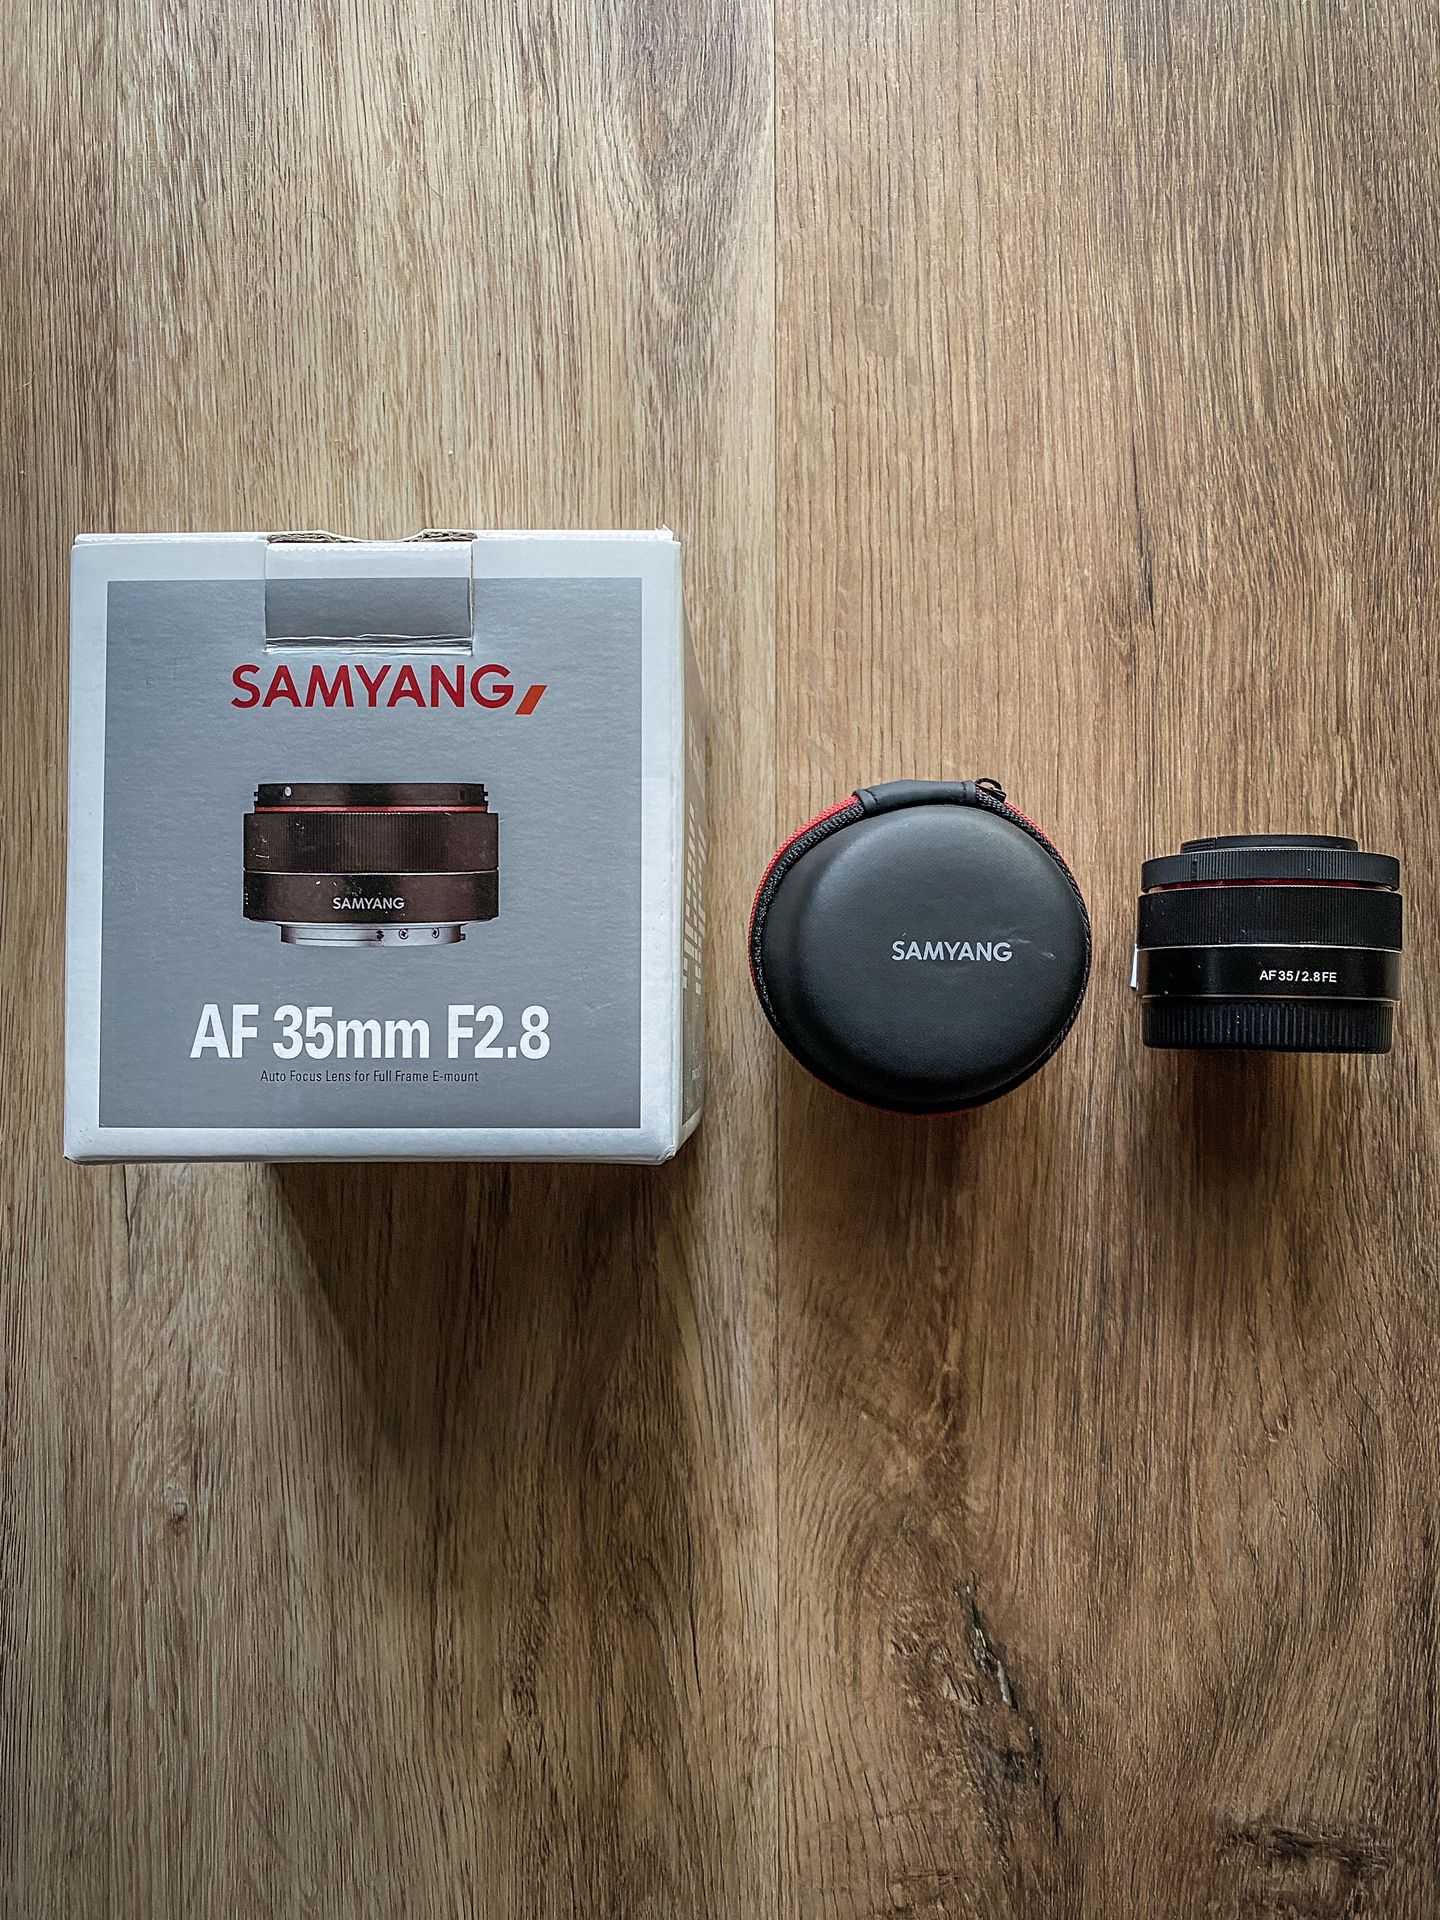 Samyang 35mm f/2.8 for Sony Full Frame E-mount